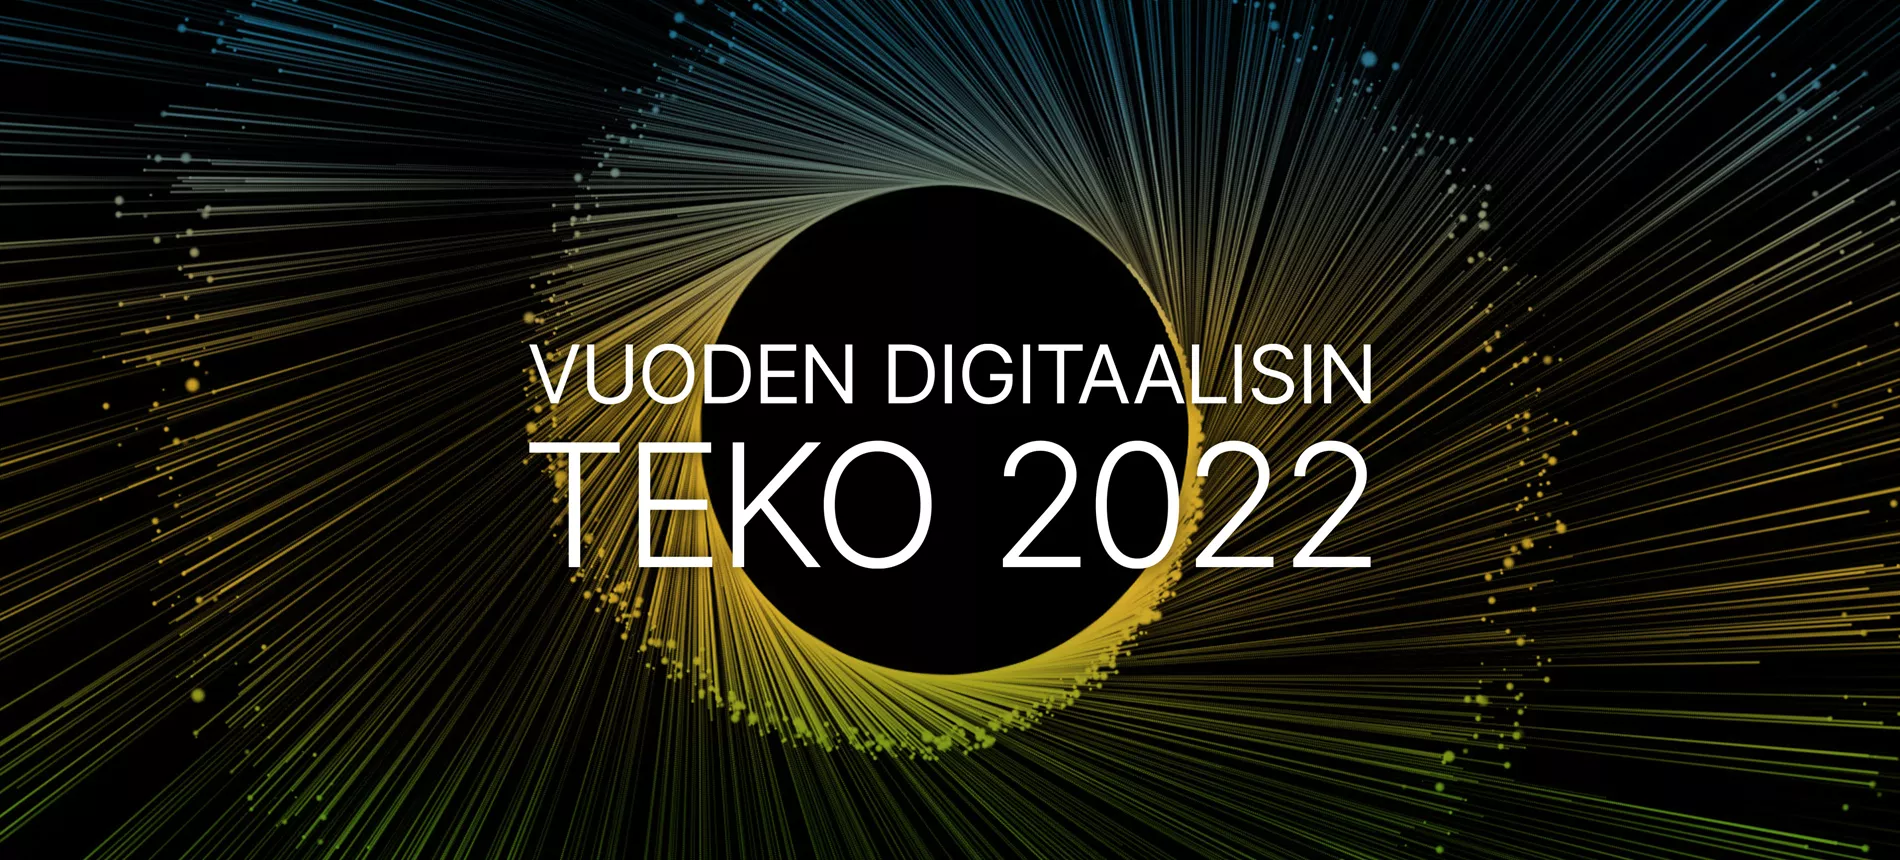 Vuoden digitaalisin teko 2022 logo